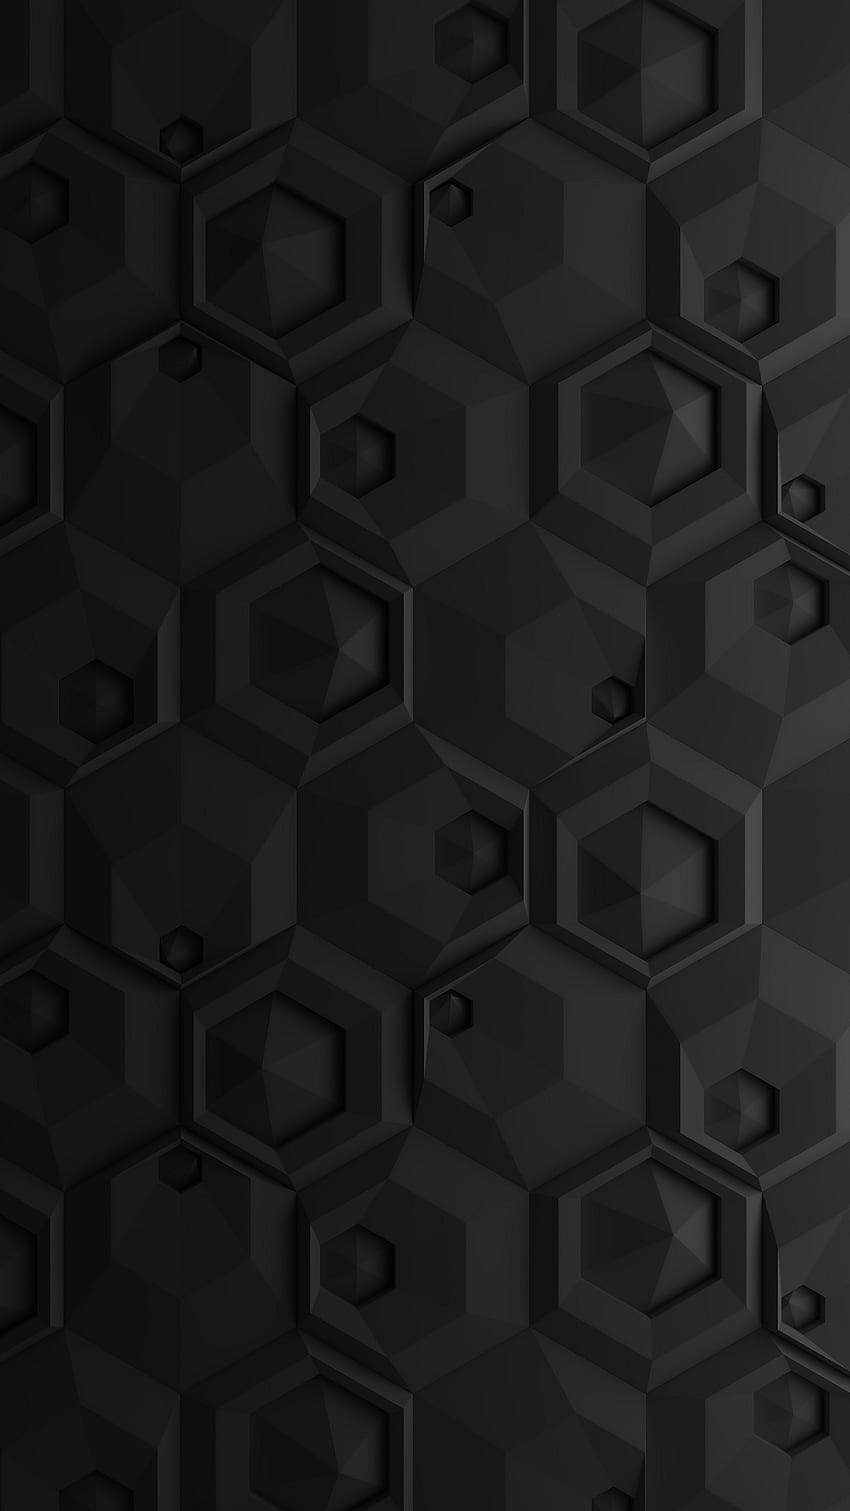 紙の黒い六角形パターンのマテリアル デザインの次元の影は、きれいな抽象的です。 ダーク、シルバーグレー、アンドロイド HD電話の壁紙